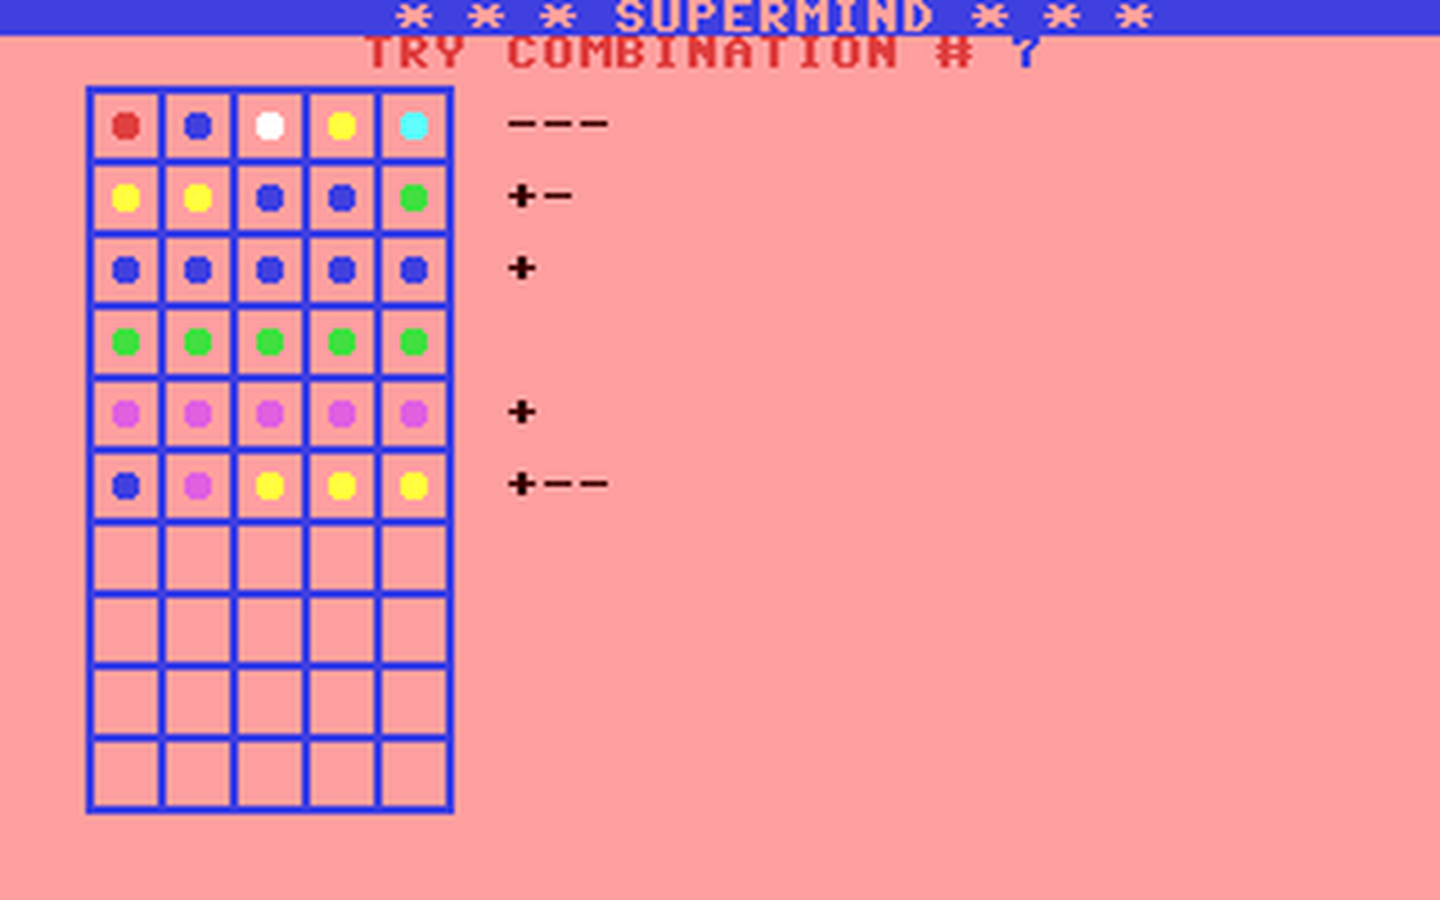 C64 GameBase Supermind Brainsoft 1983